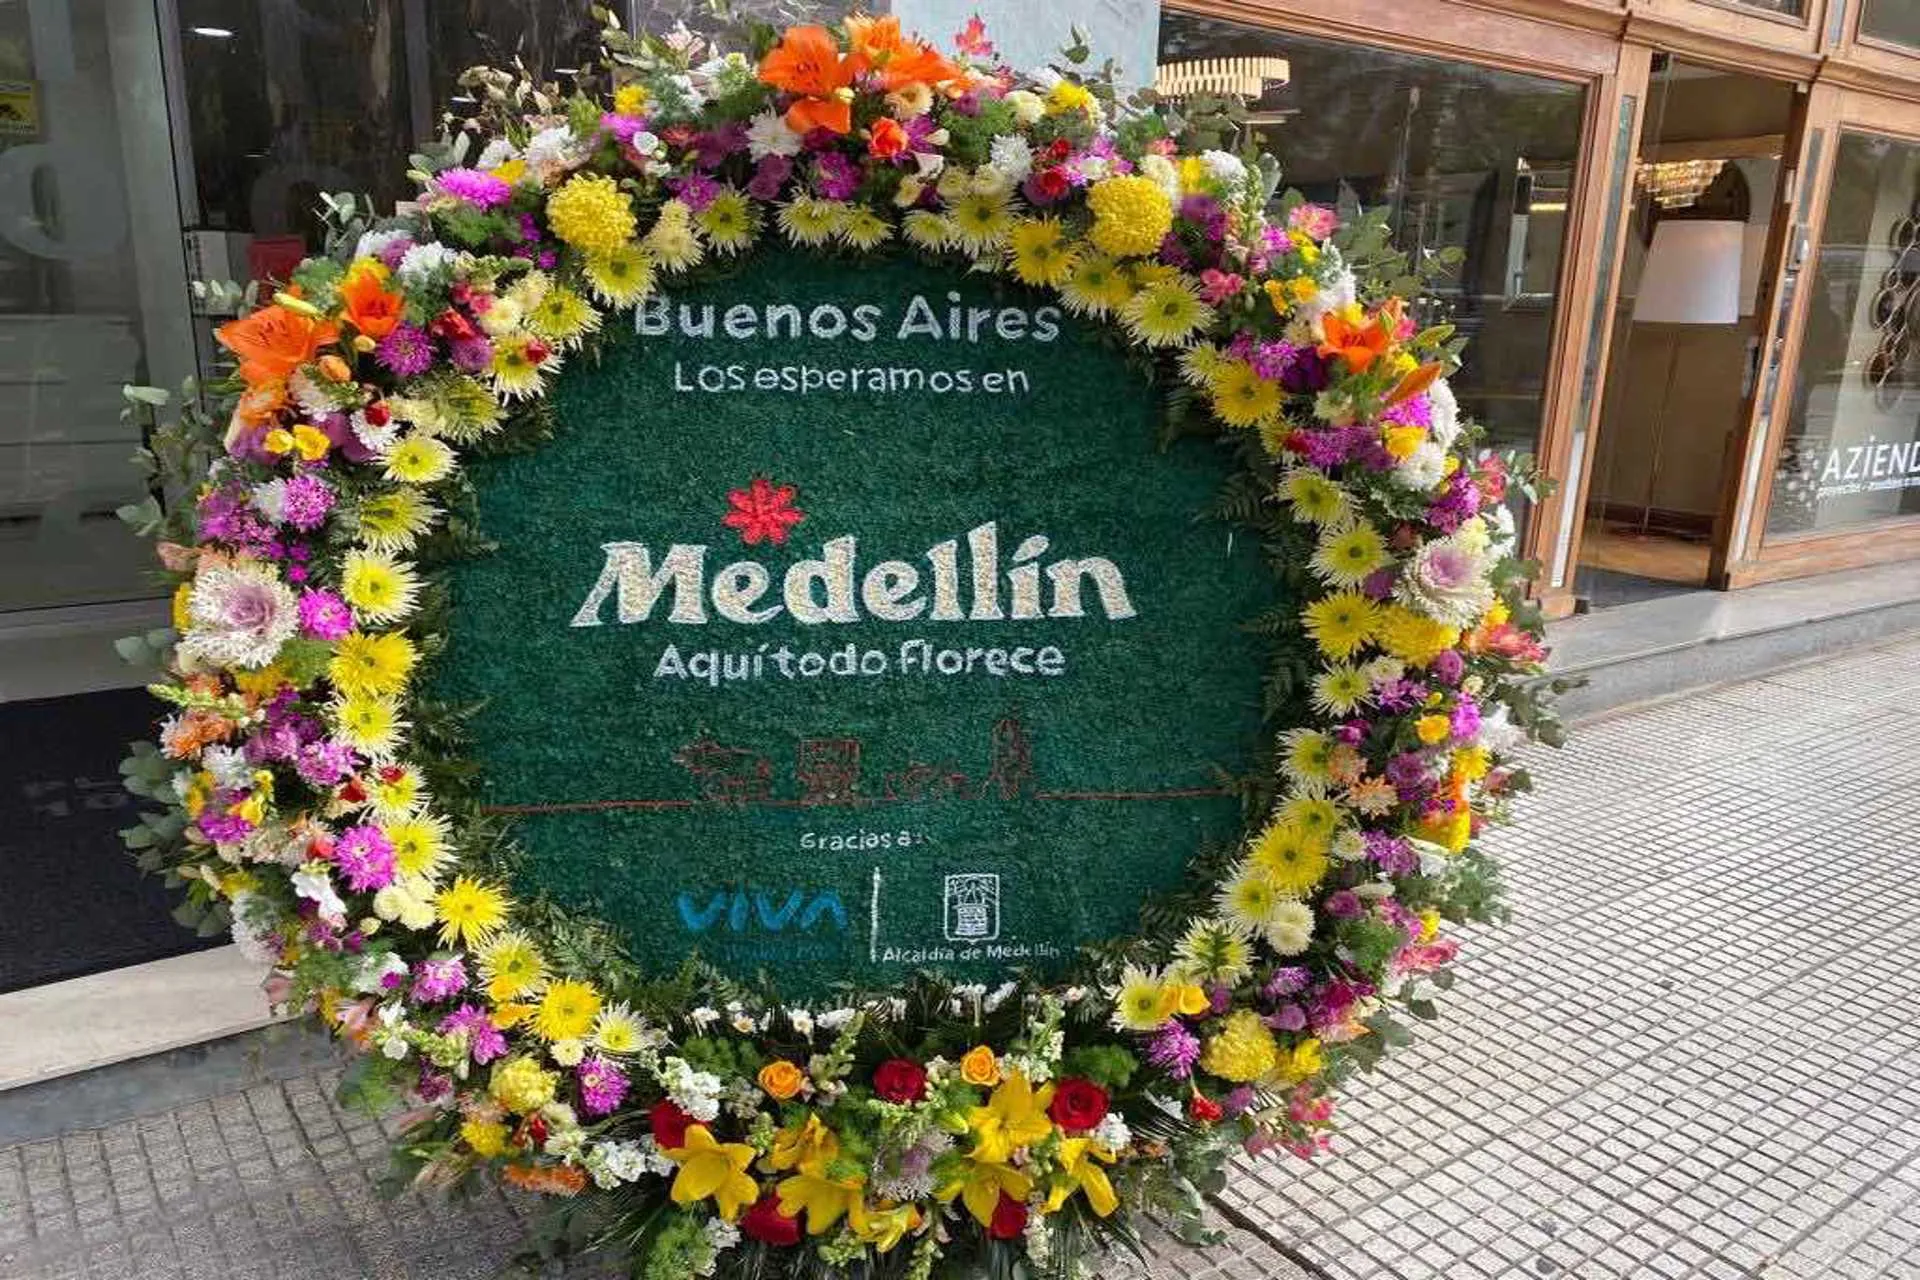 Medellín hizo el lanzamiento de la Feria de las Flores en Argentina